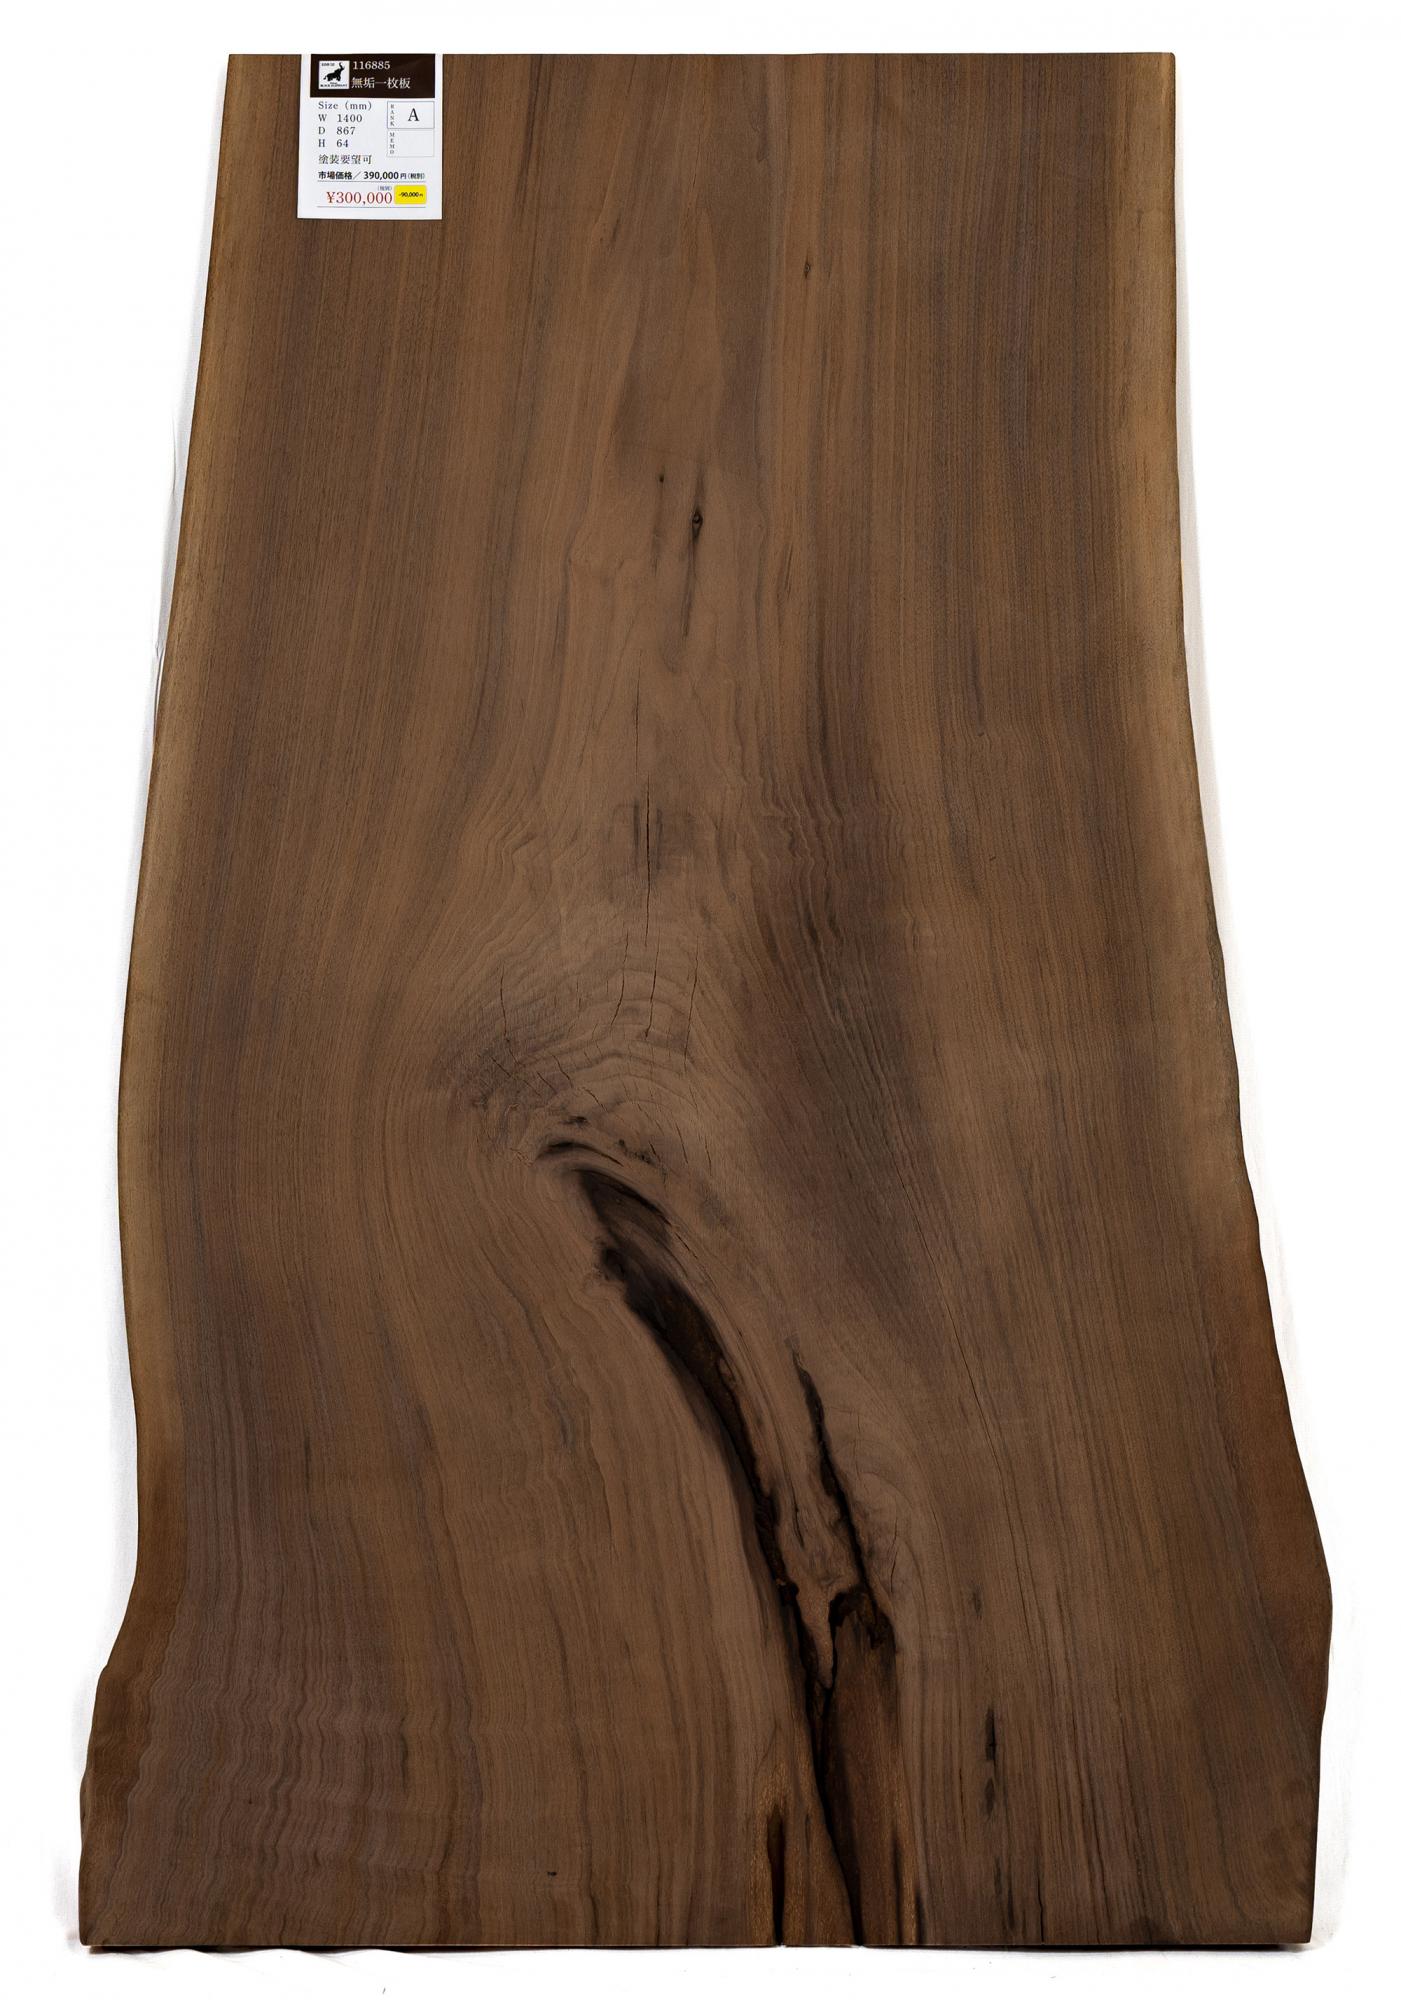 ウォールナット無垢材一枚板テーブル(幅1400mm 高級素材アメリカンブラックウォールナット)